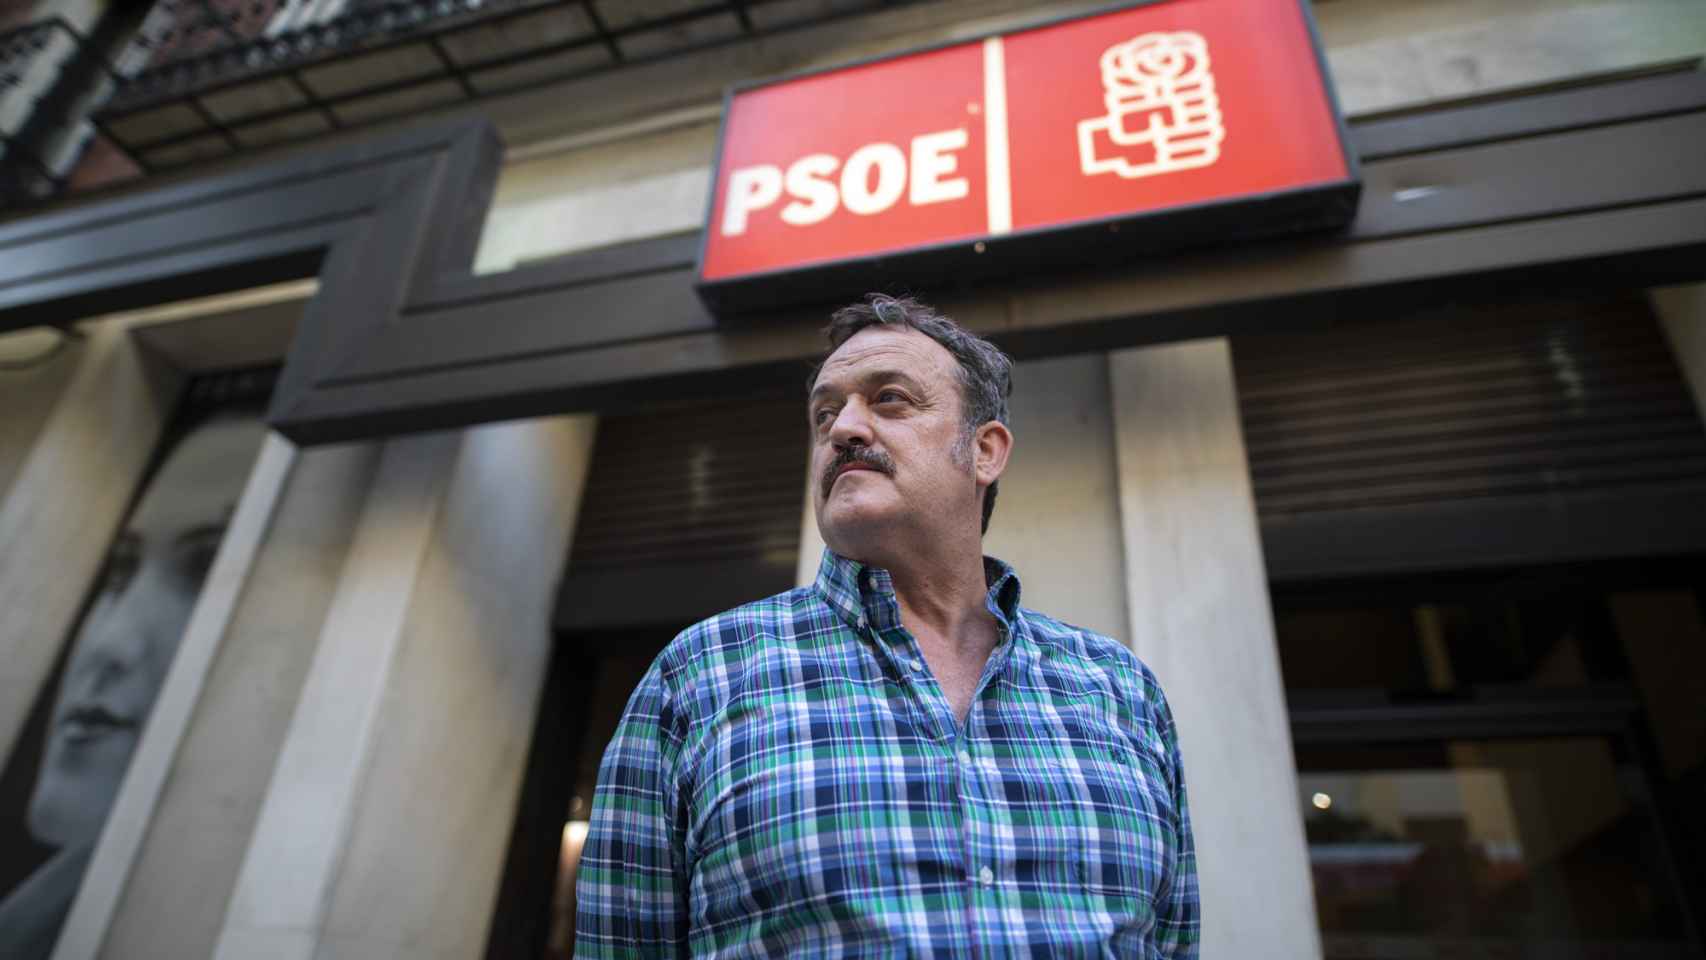 Arruinado, el actor César Vea se pone en huelga de hambre: “Nos engañaron con las renovables”